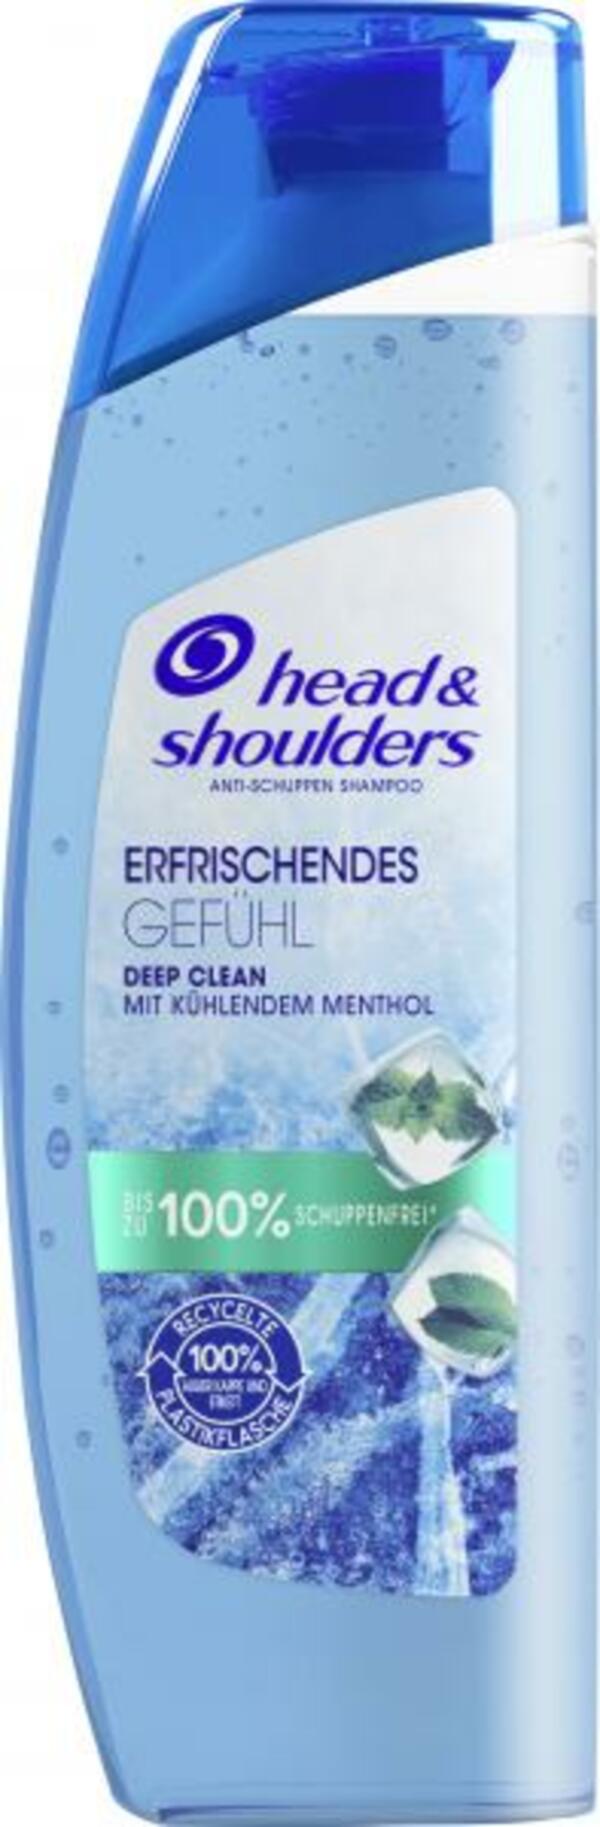 Bild 1 von Head & Shoulders Anti-Schuppen Shampoo Erfrischendes Gefühl